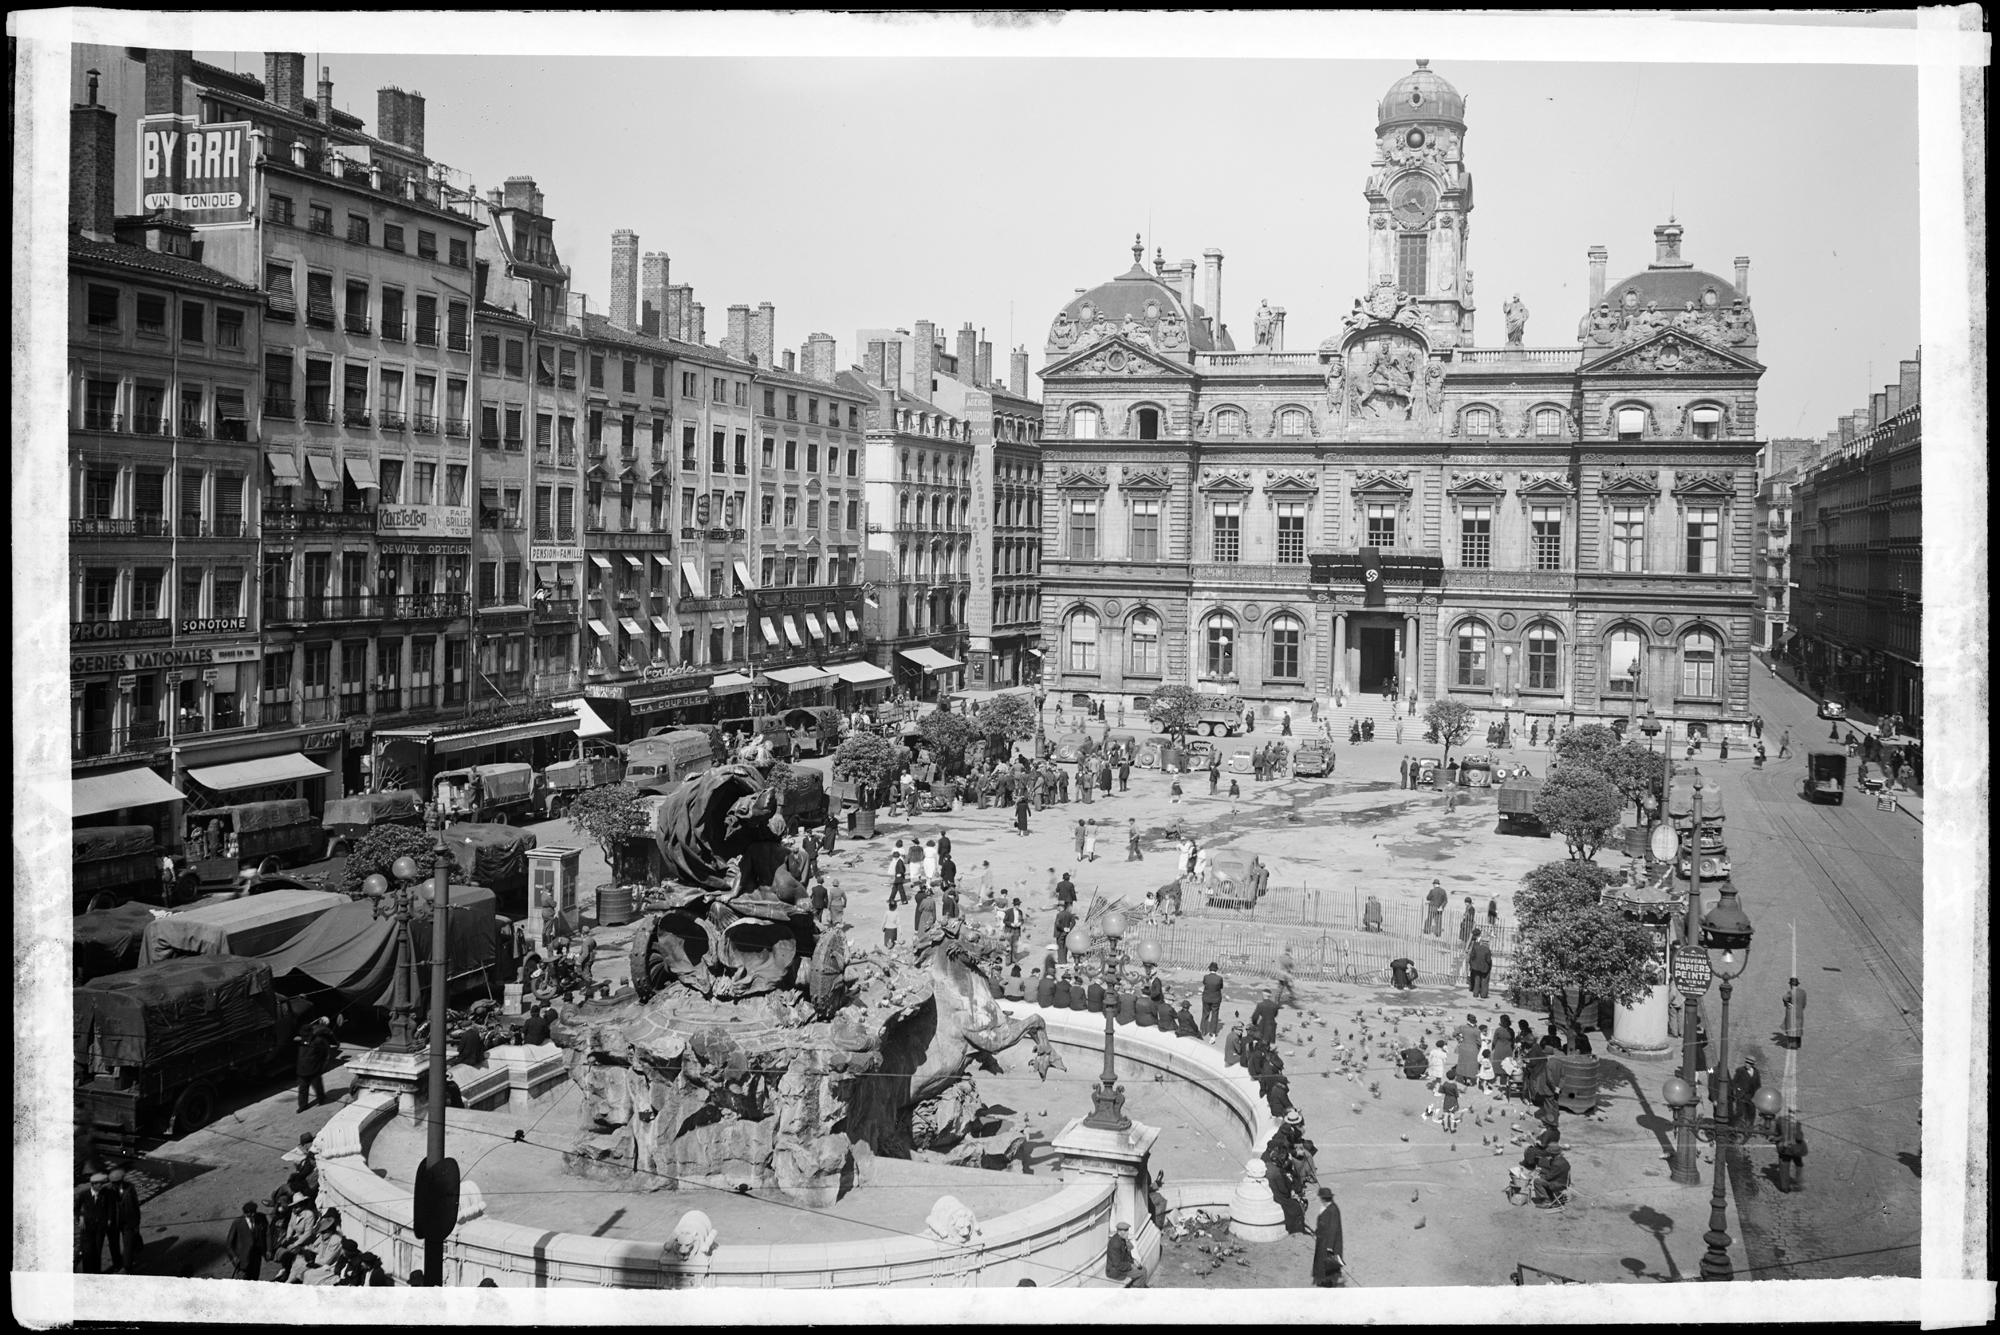 Lyon est occupée, une croix gammée a été accrochée au balcon de l’Hôtel de Ville. Négatif sur verre, détail (juin-juillet 1940, 3PH/397)